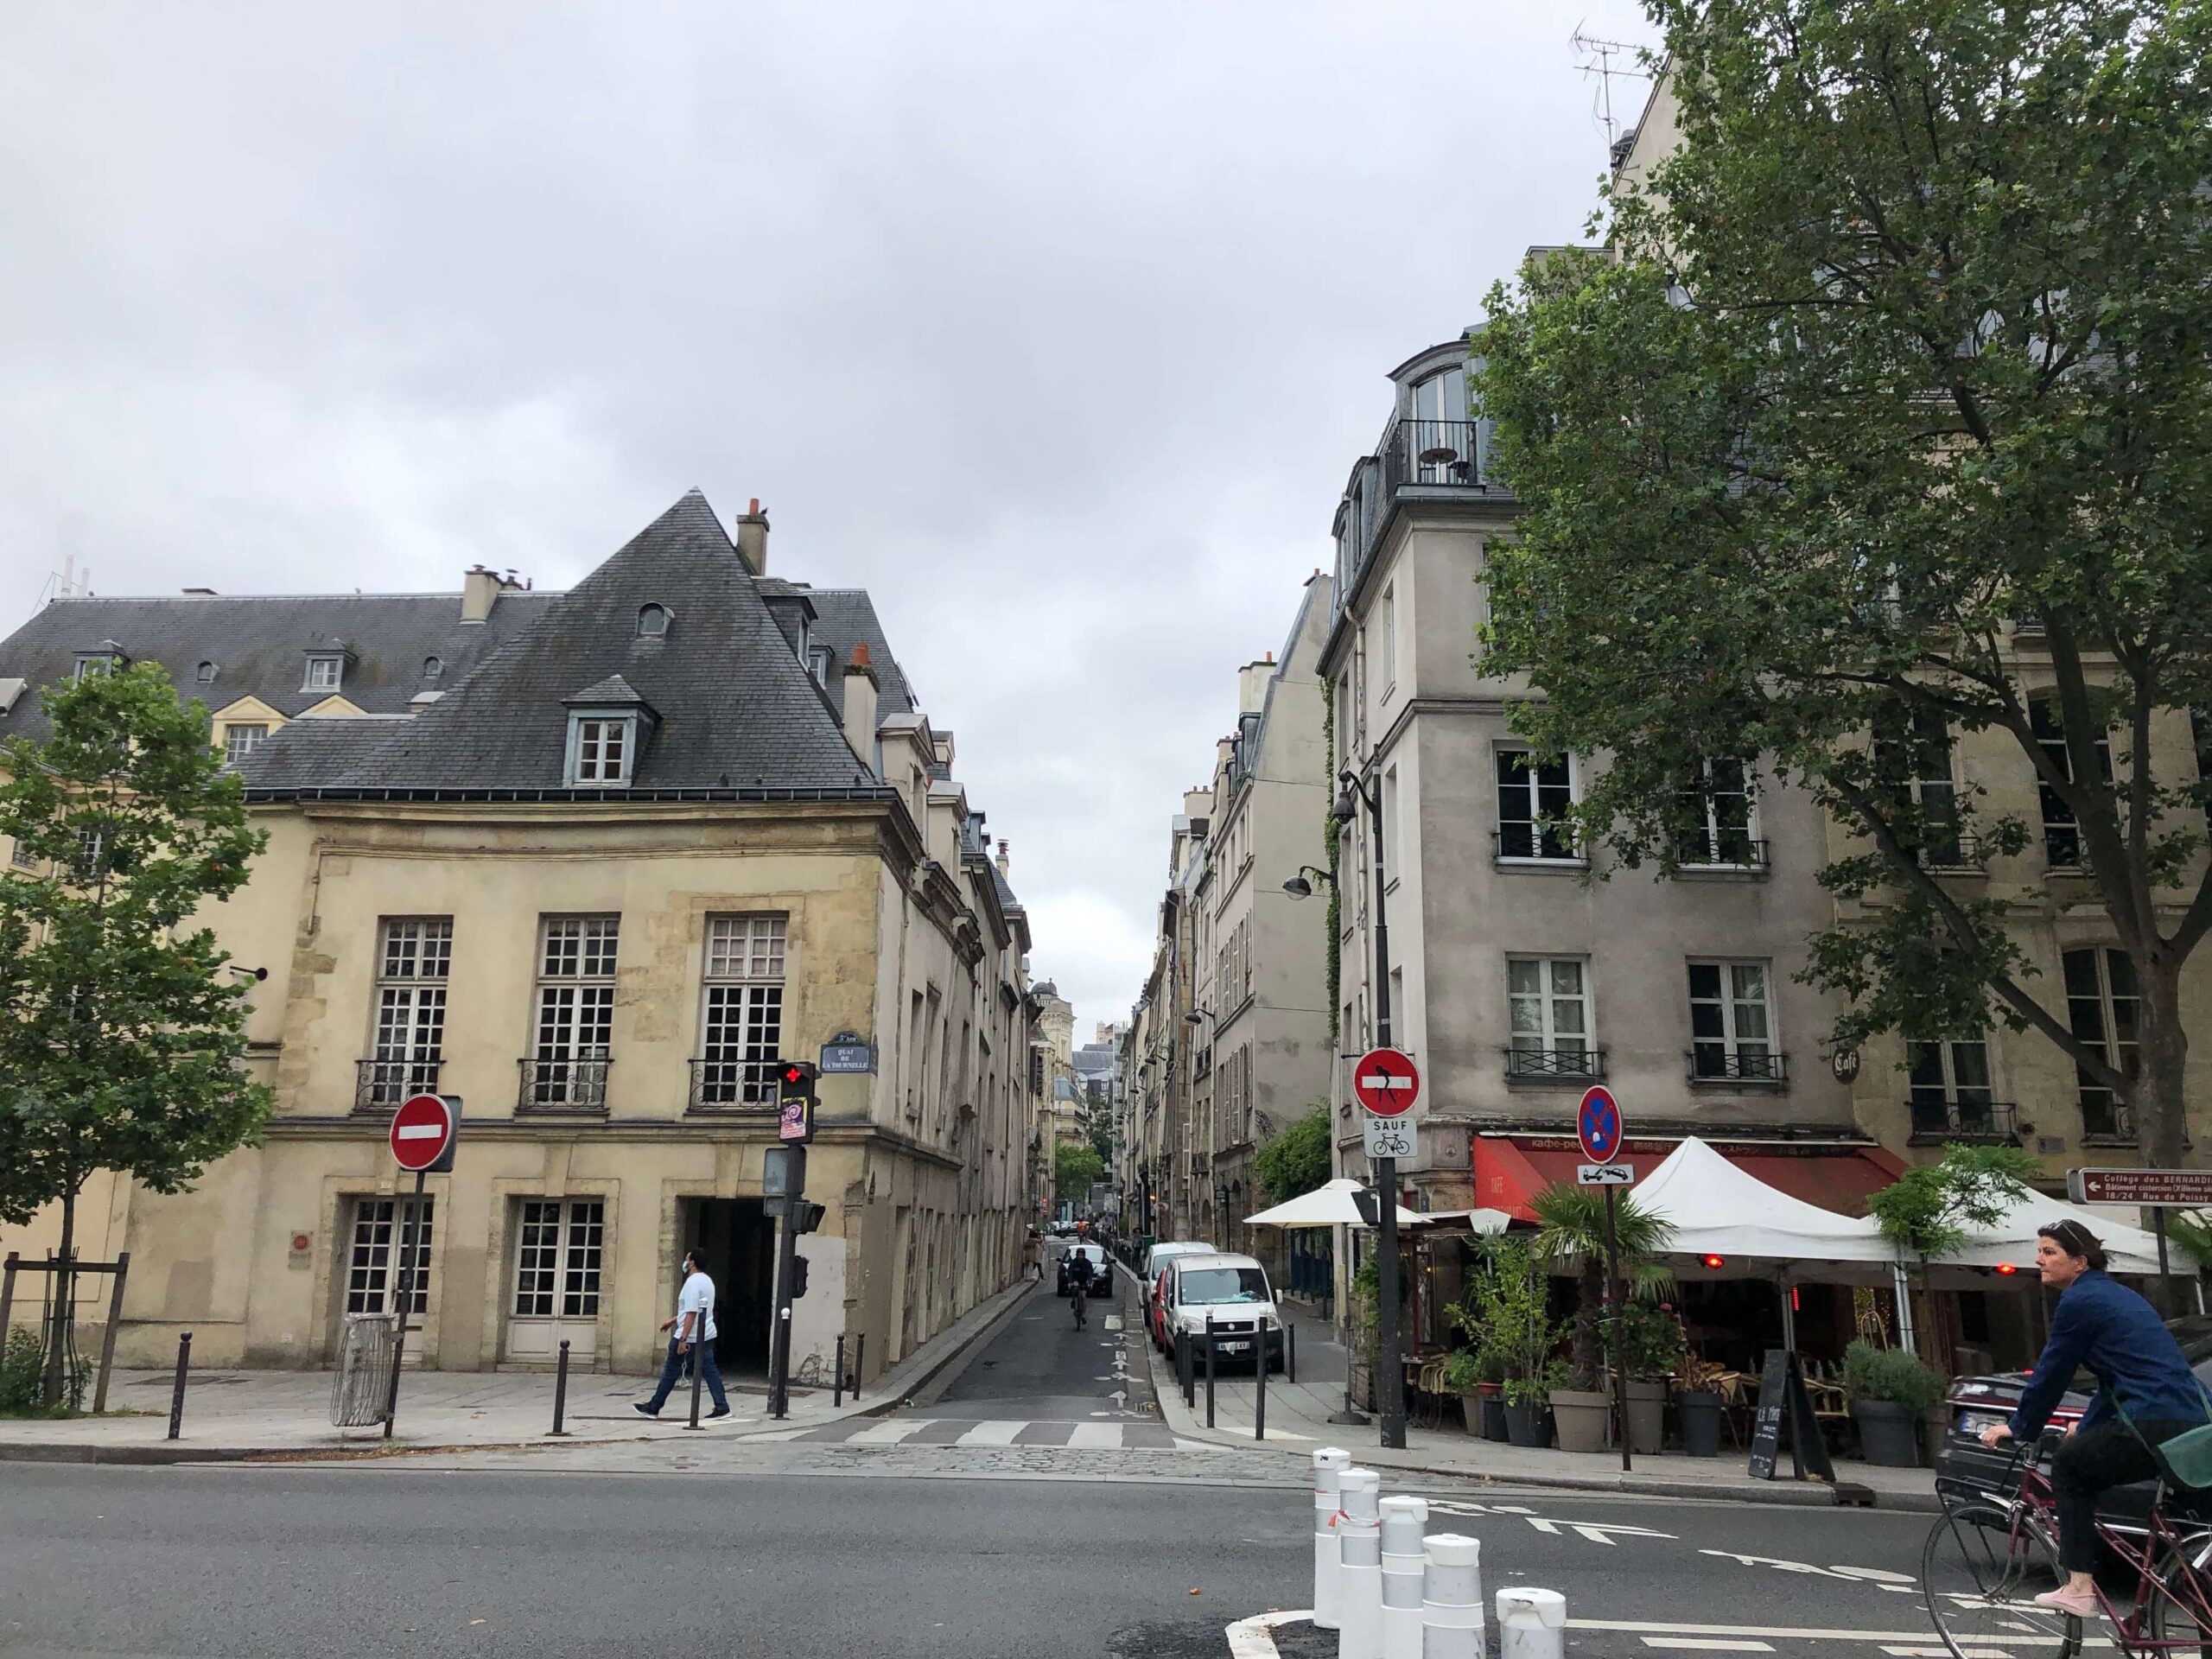 パリ最新情報 クリーンな街を目指すパリ 時速30キロの速度制限が始まる Design Stories